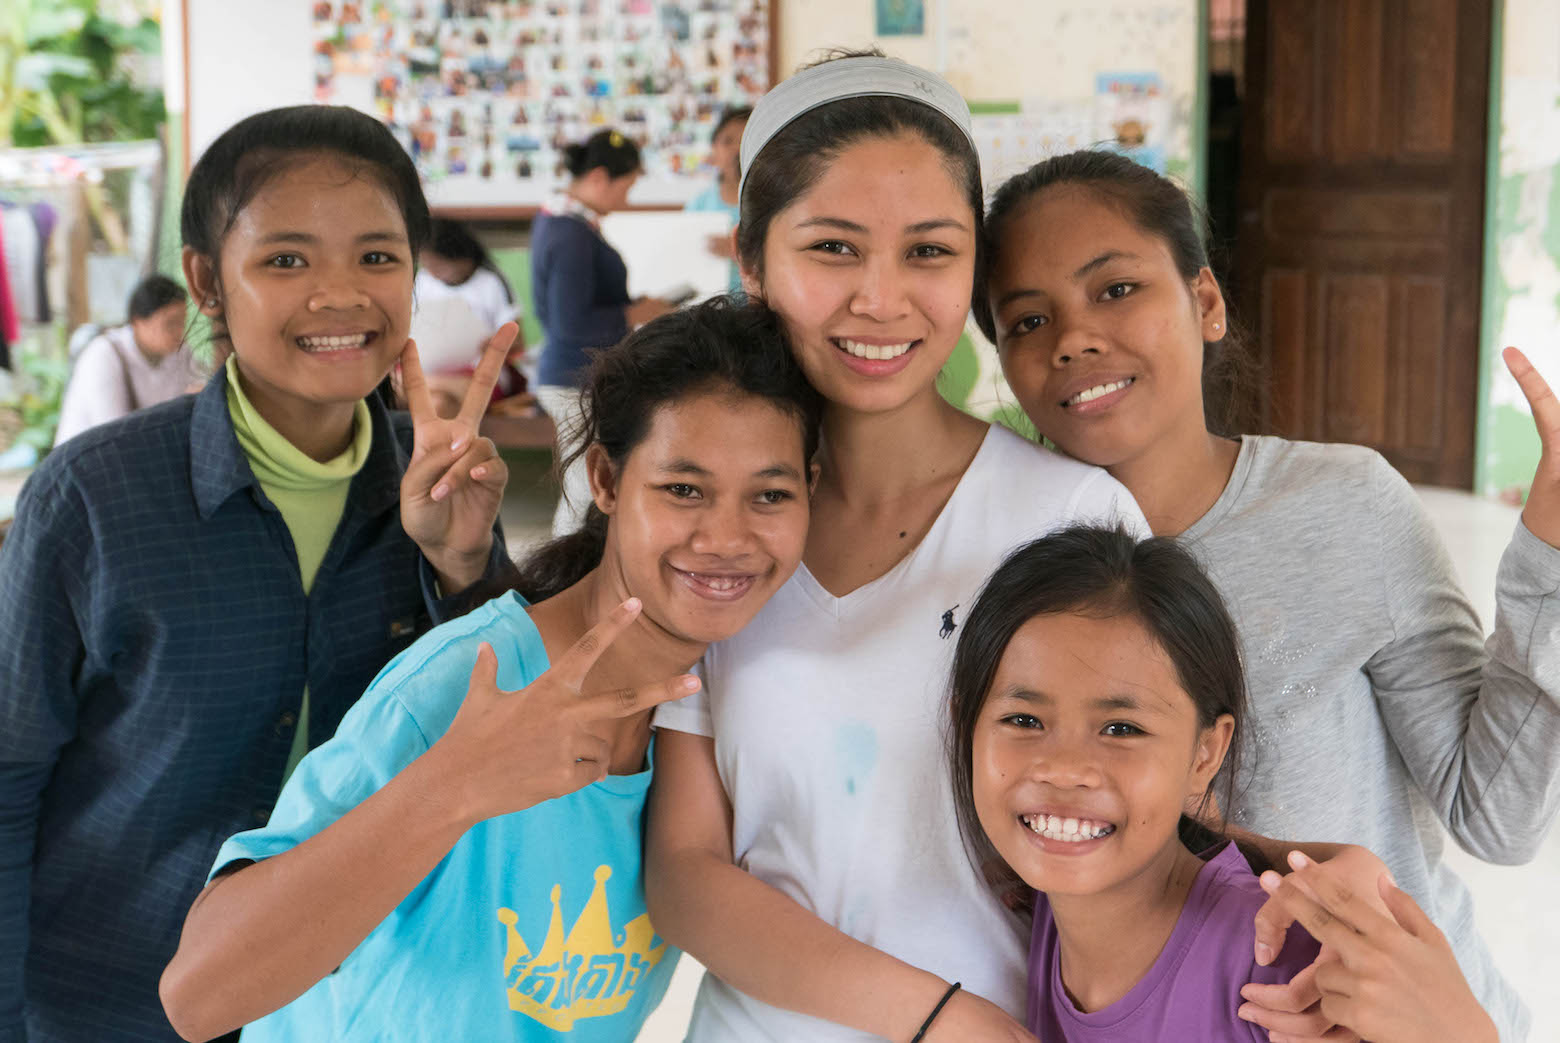 Volunteering in Cambodia Childcare Program